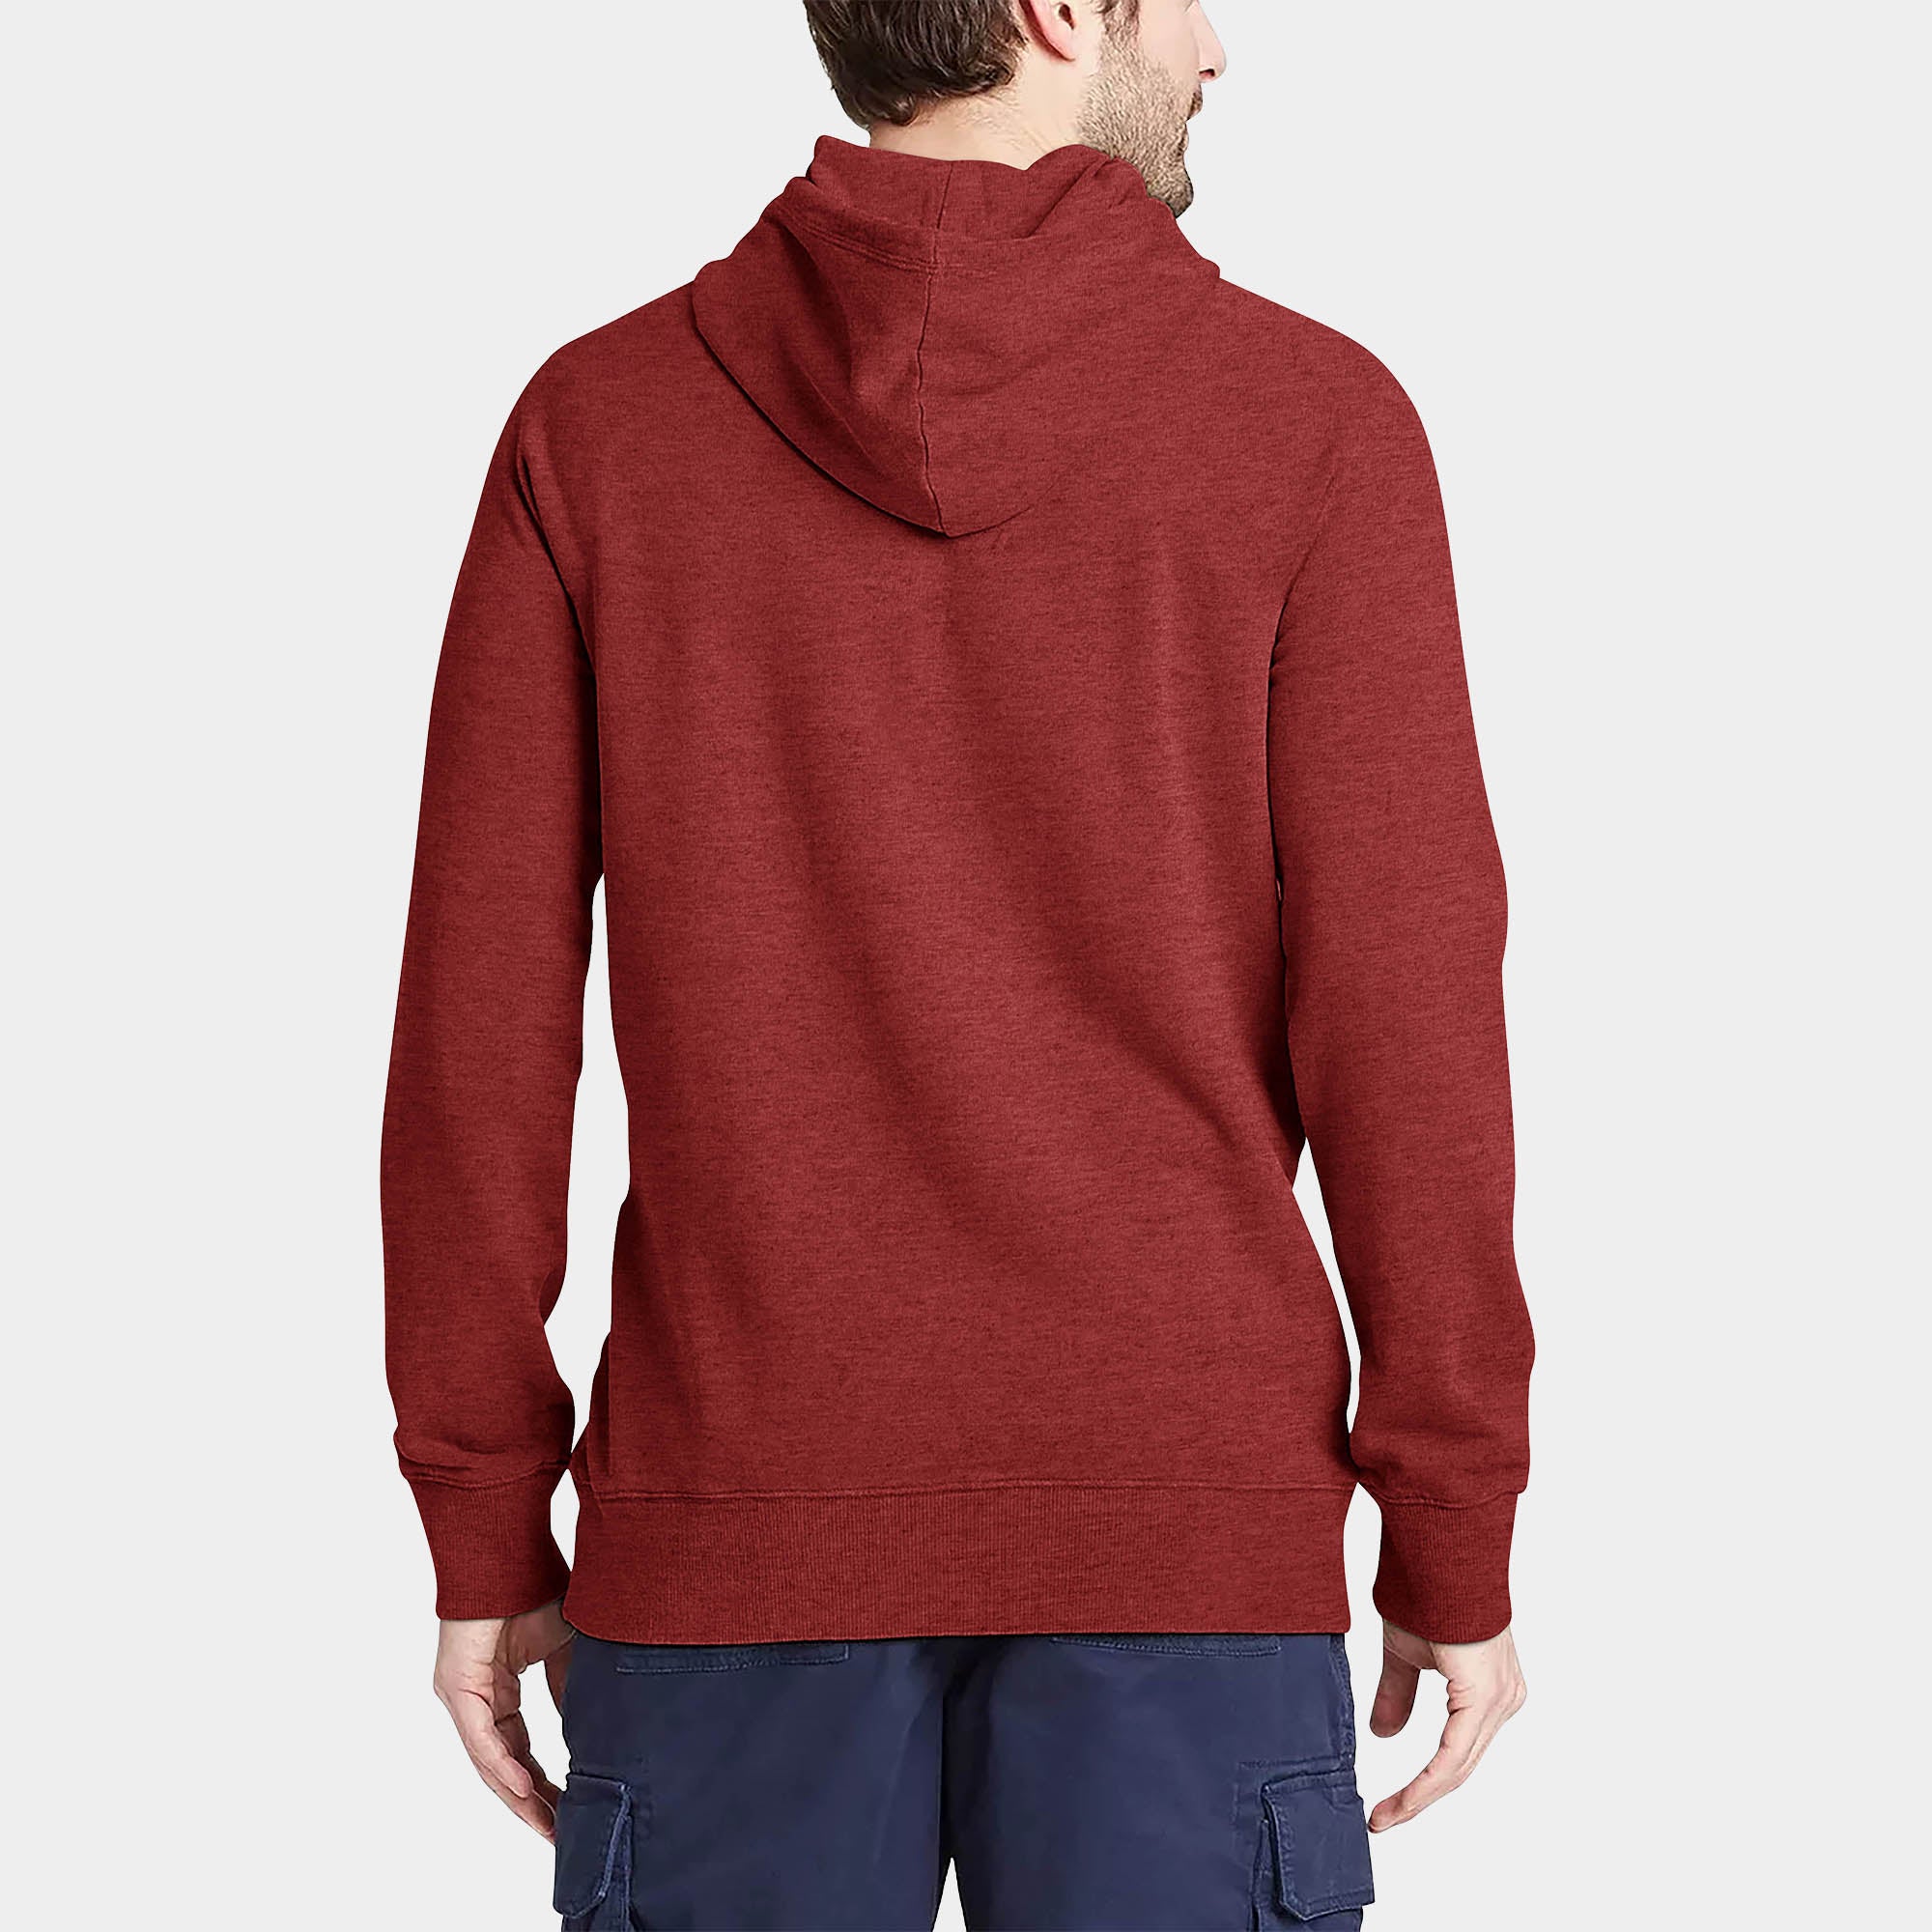 hoodie_hoodies for men_hooded sweatshirt_custom hoodies_cheap hoodies_couple hoodies_pullover hoodie_mens pullover hoodie_Cranberry